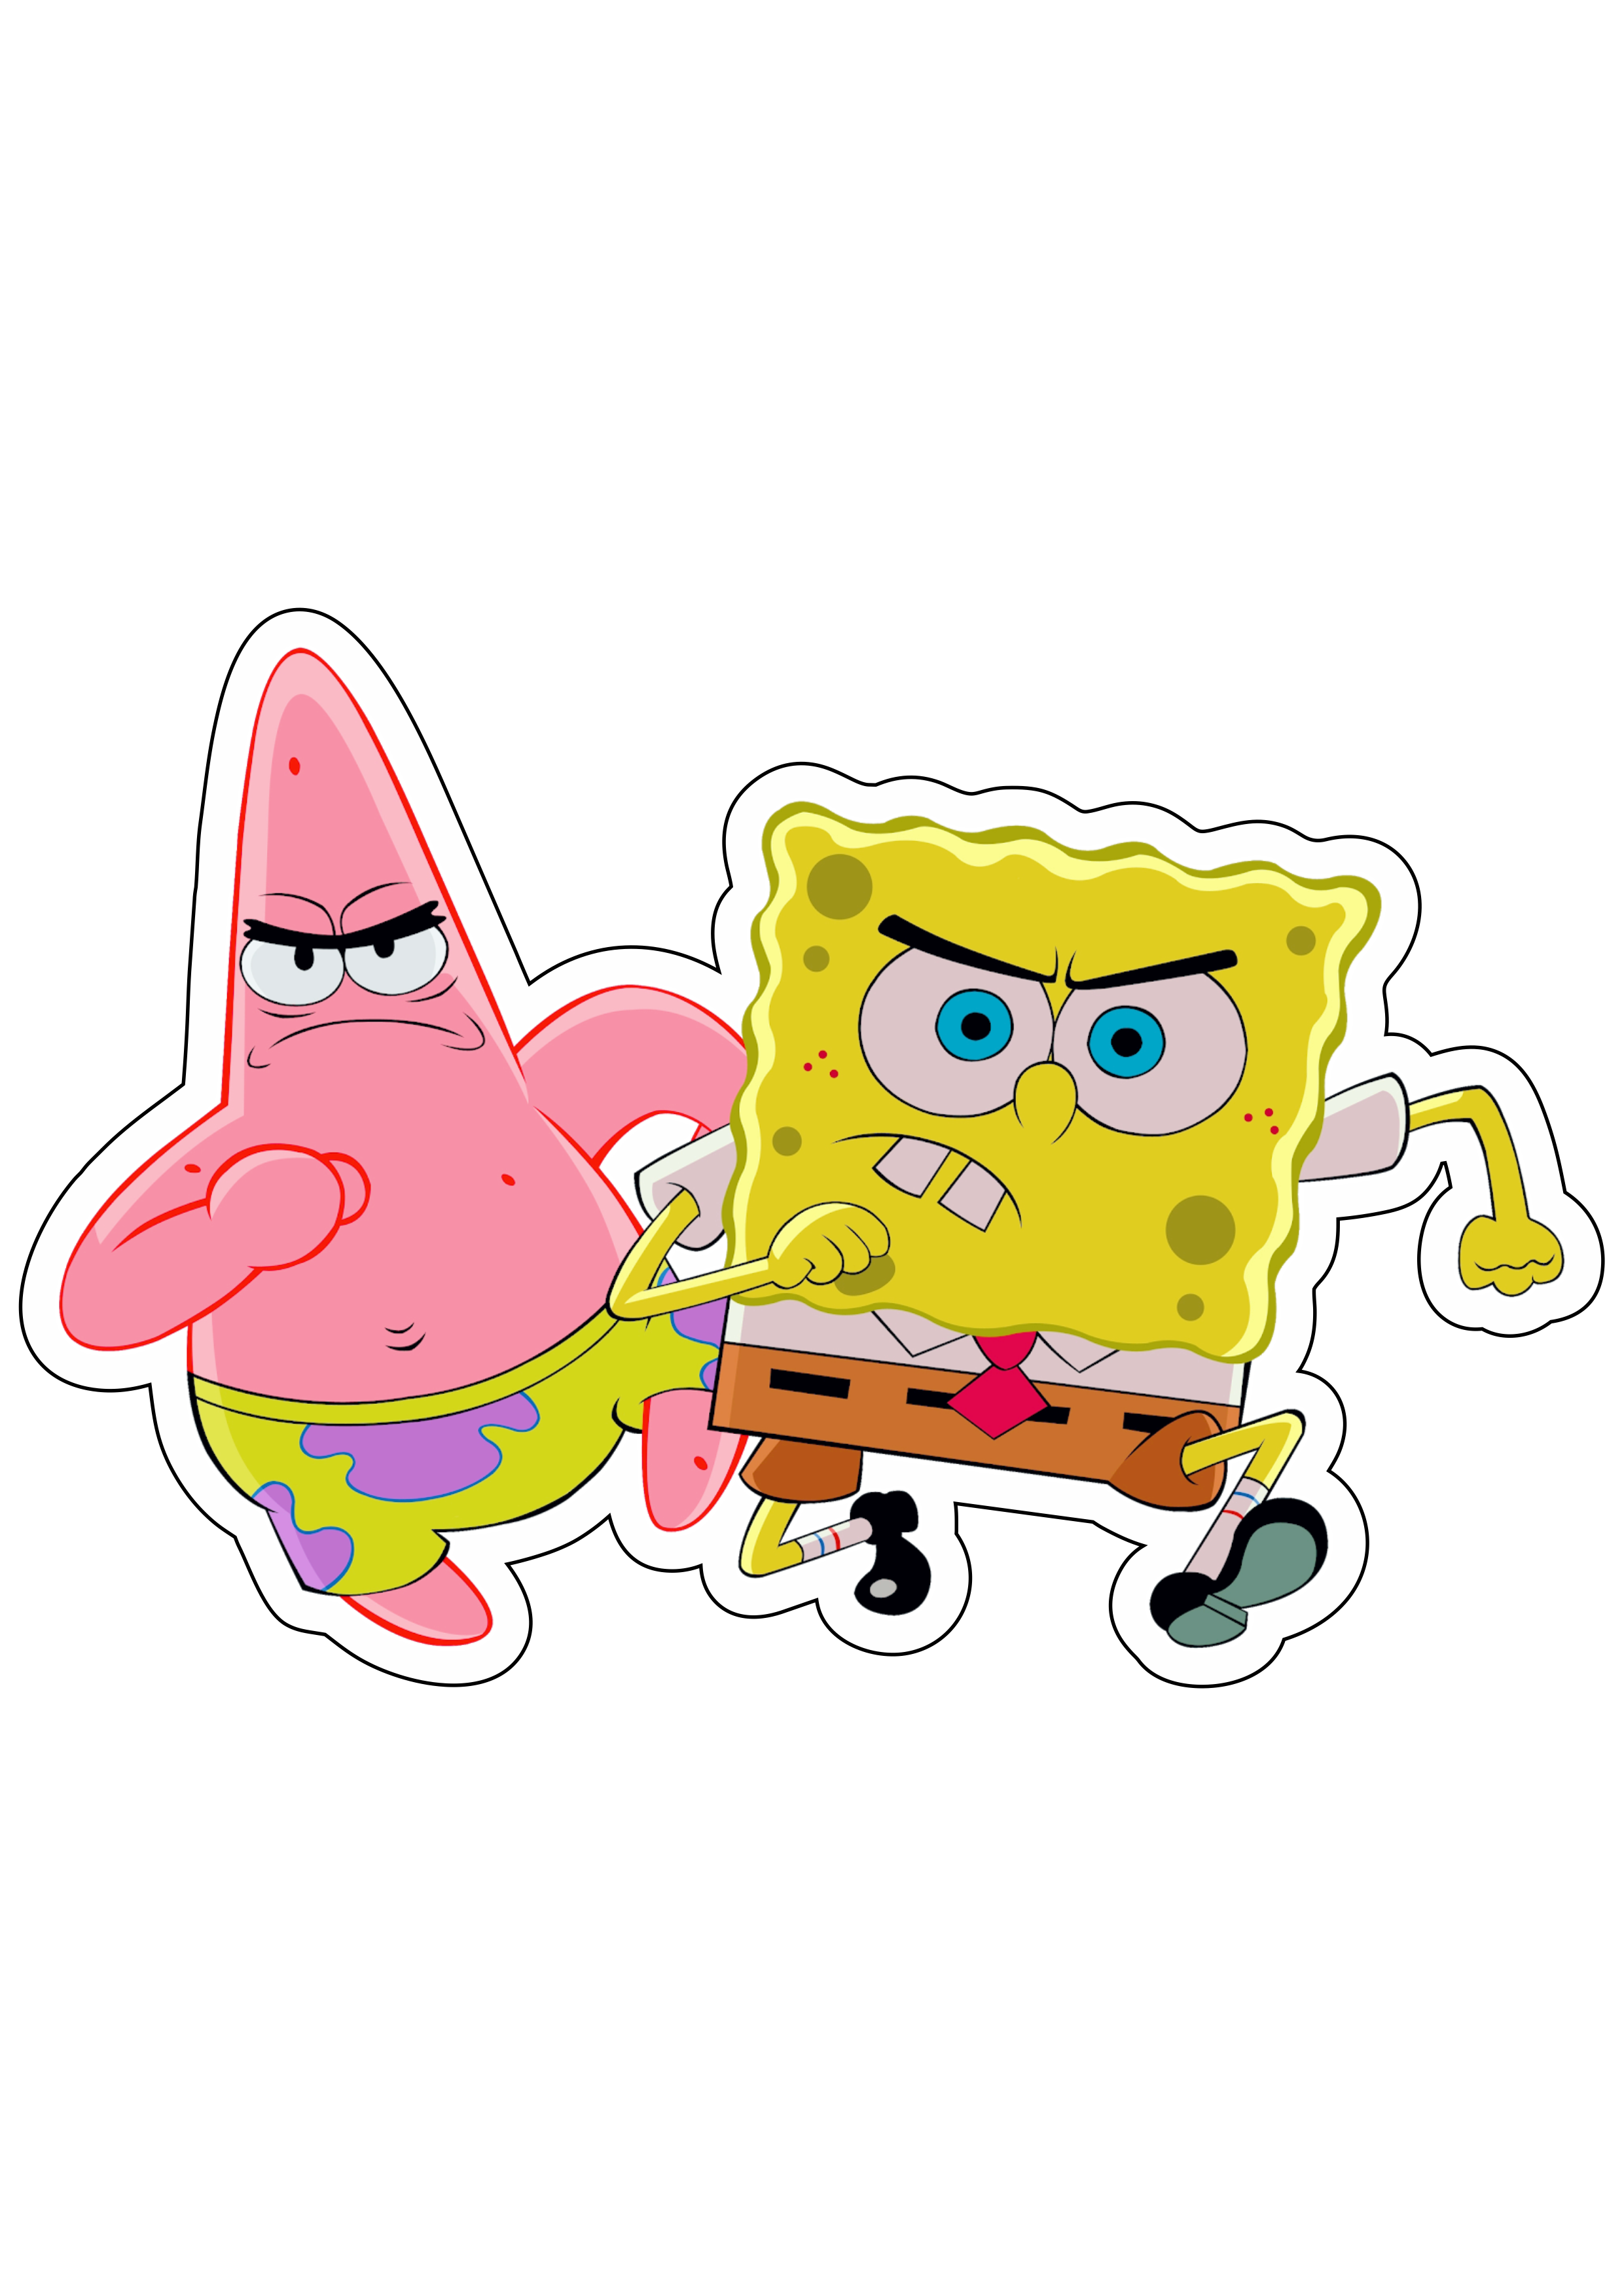 Bob esponja calça quadrada e Patrick estrela estou pronto Spongebob Squarepants desenho animado infantil Nickelodeon png